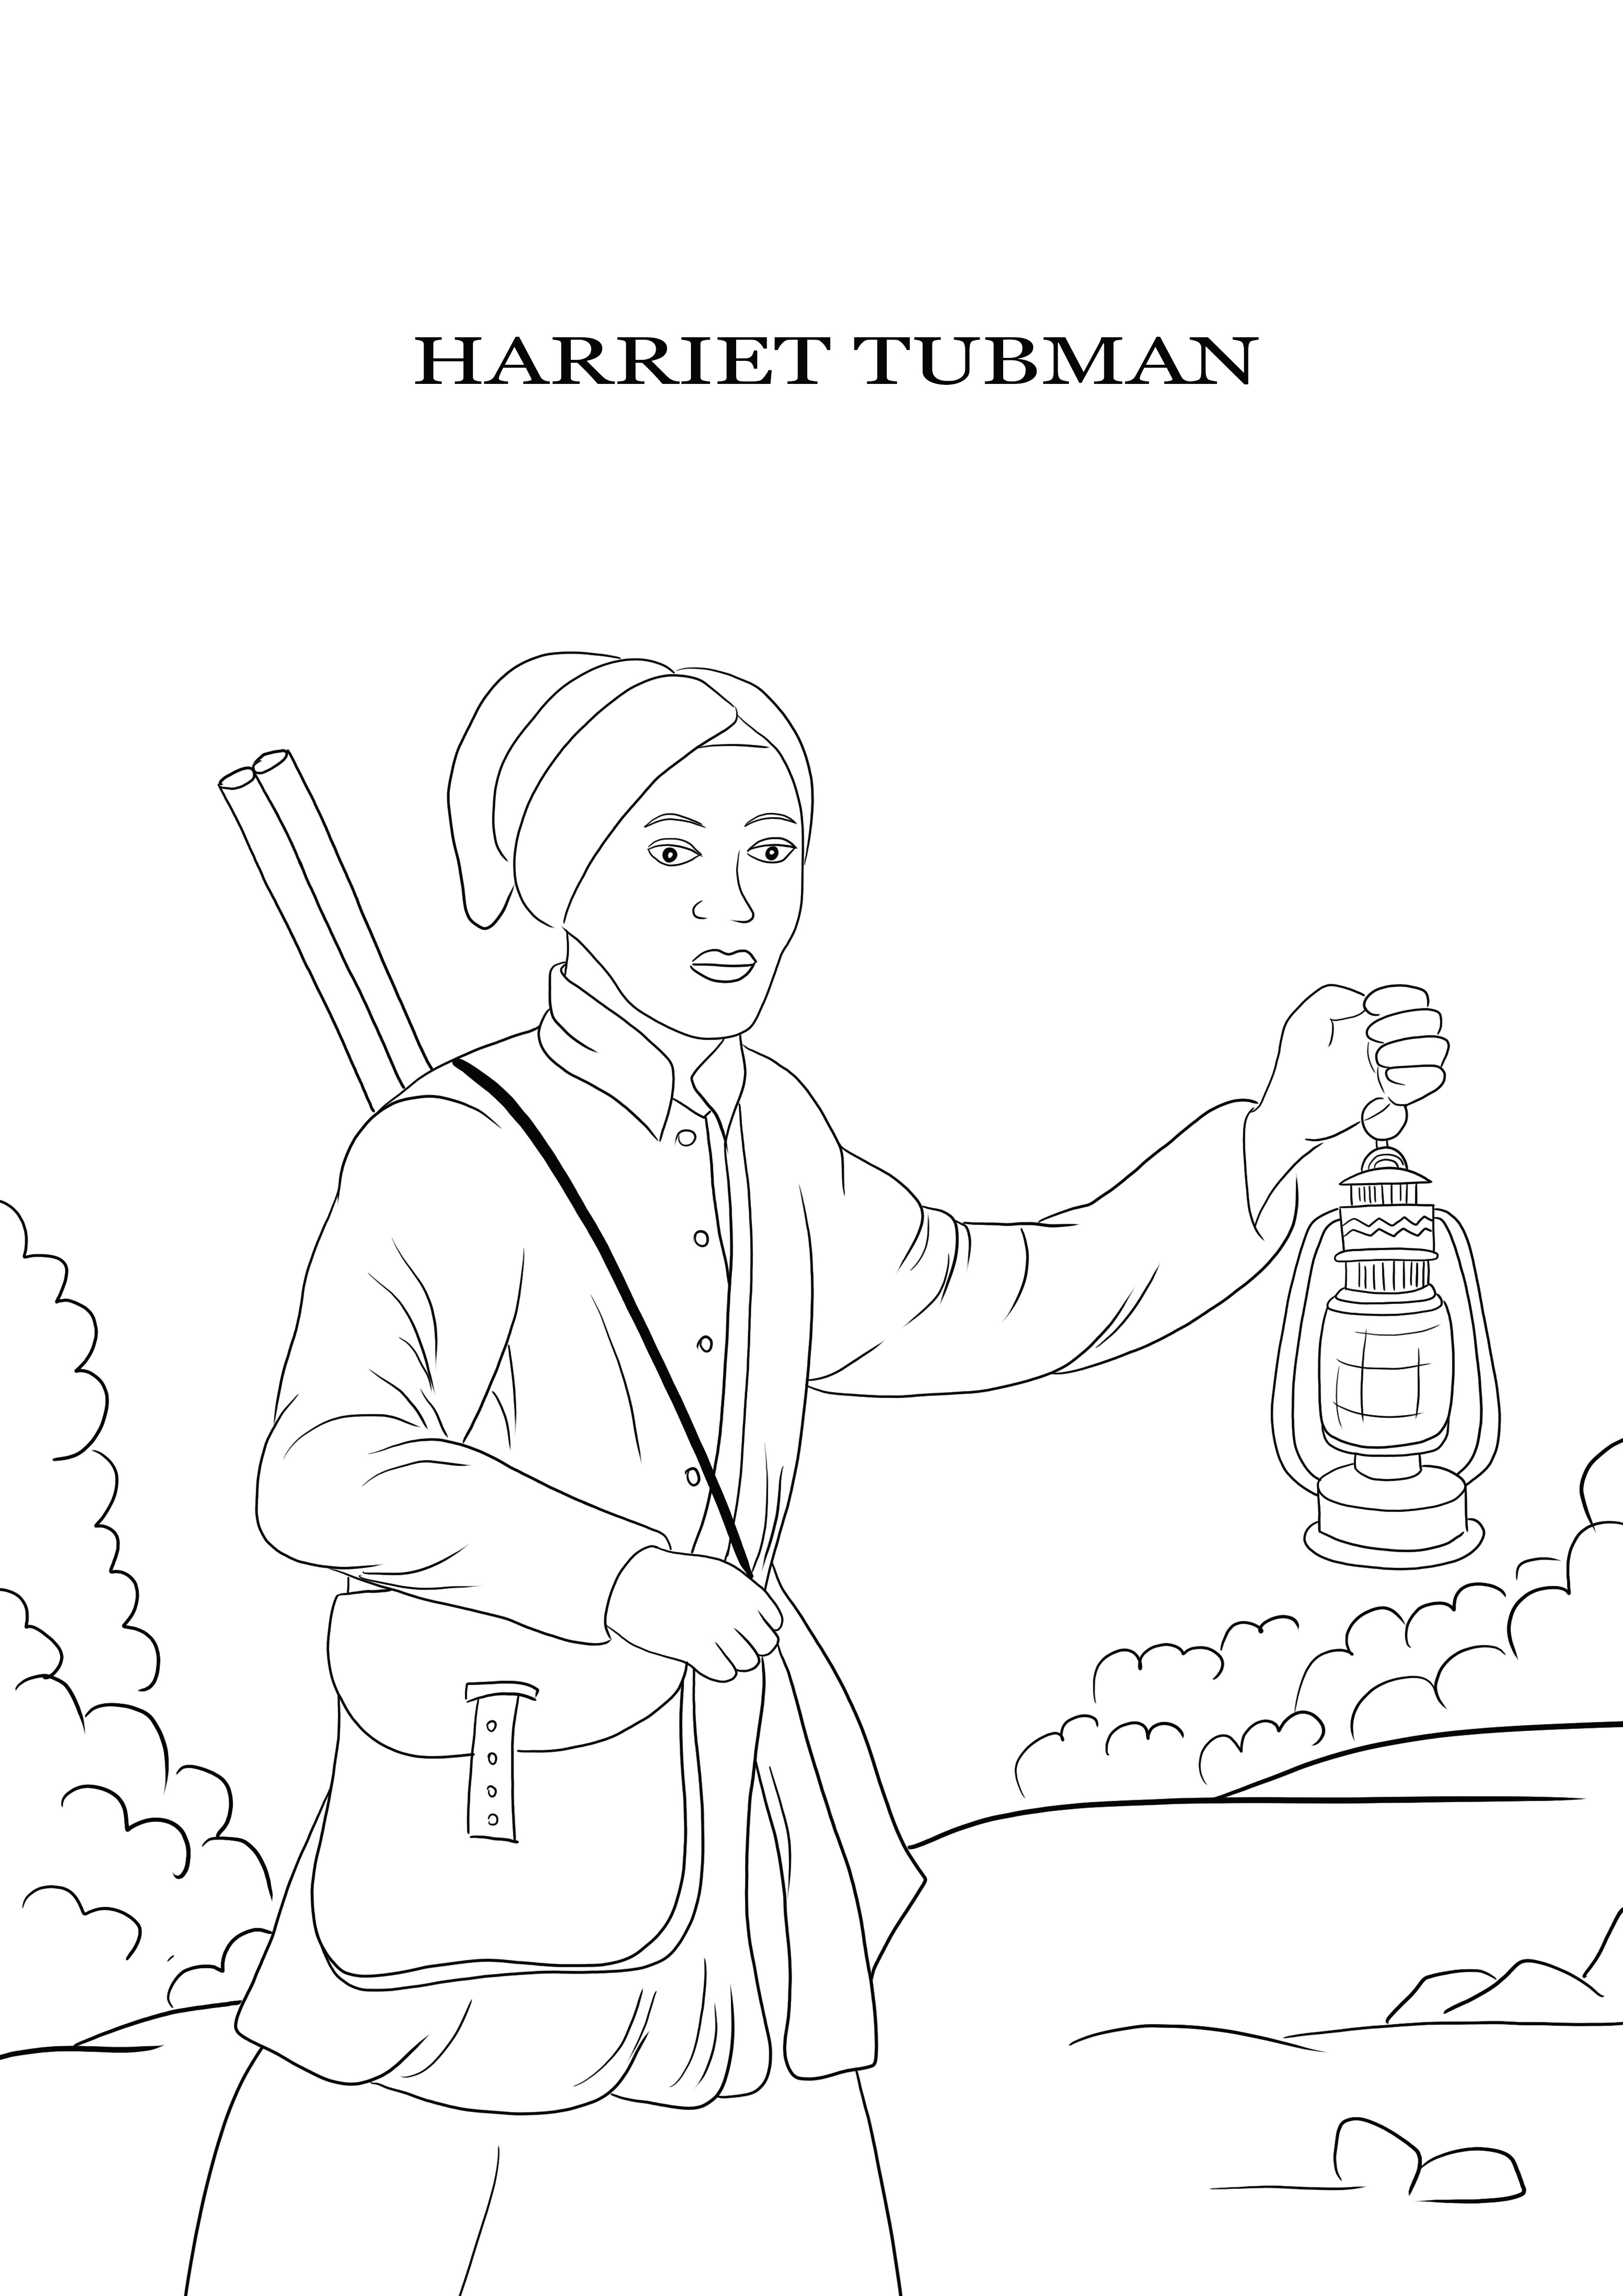 Harriet Tubman poate imprima gratuit și o foaie simplu de colorat pentru copii